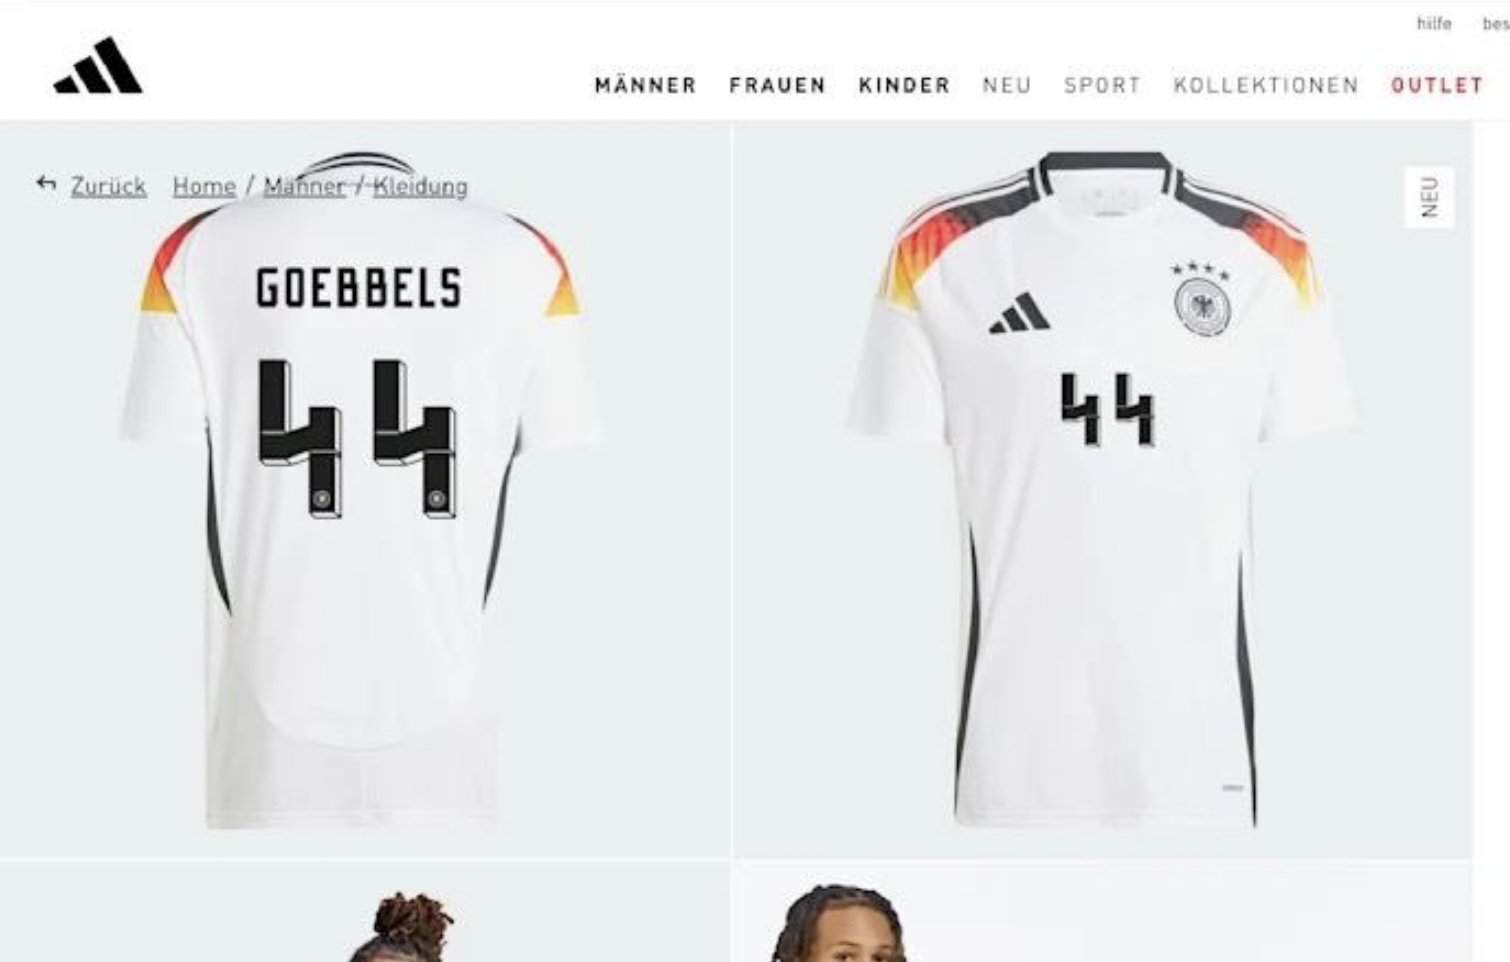 Megtiltotta az Adidas, hogy a német válogatott mezére a 44-es számot rakassák a szurkolók